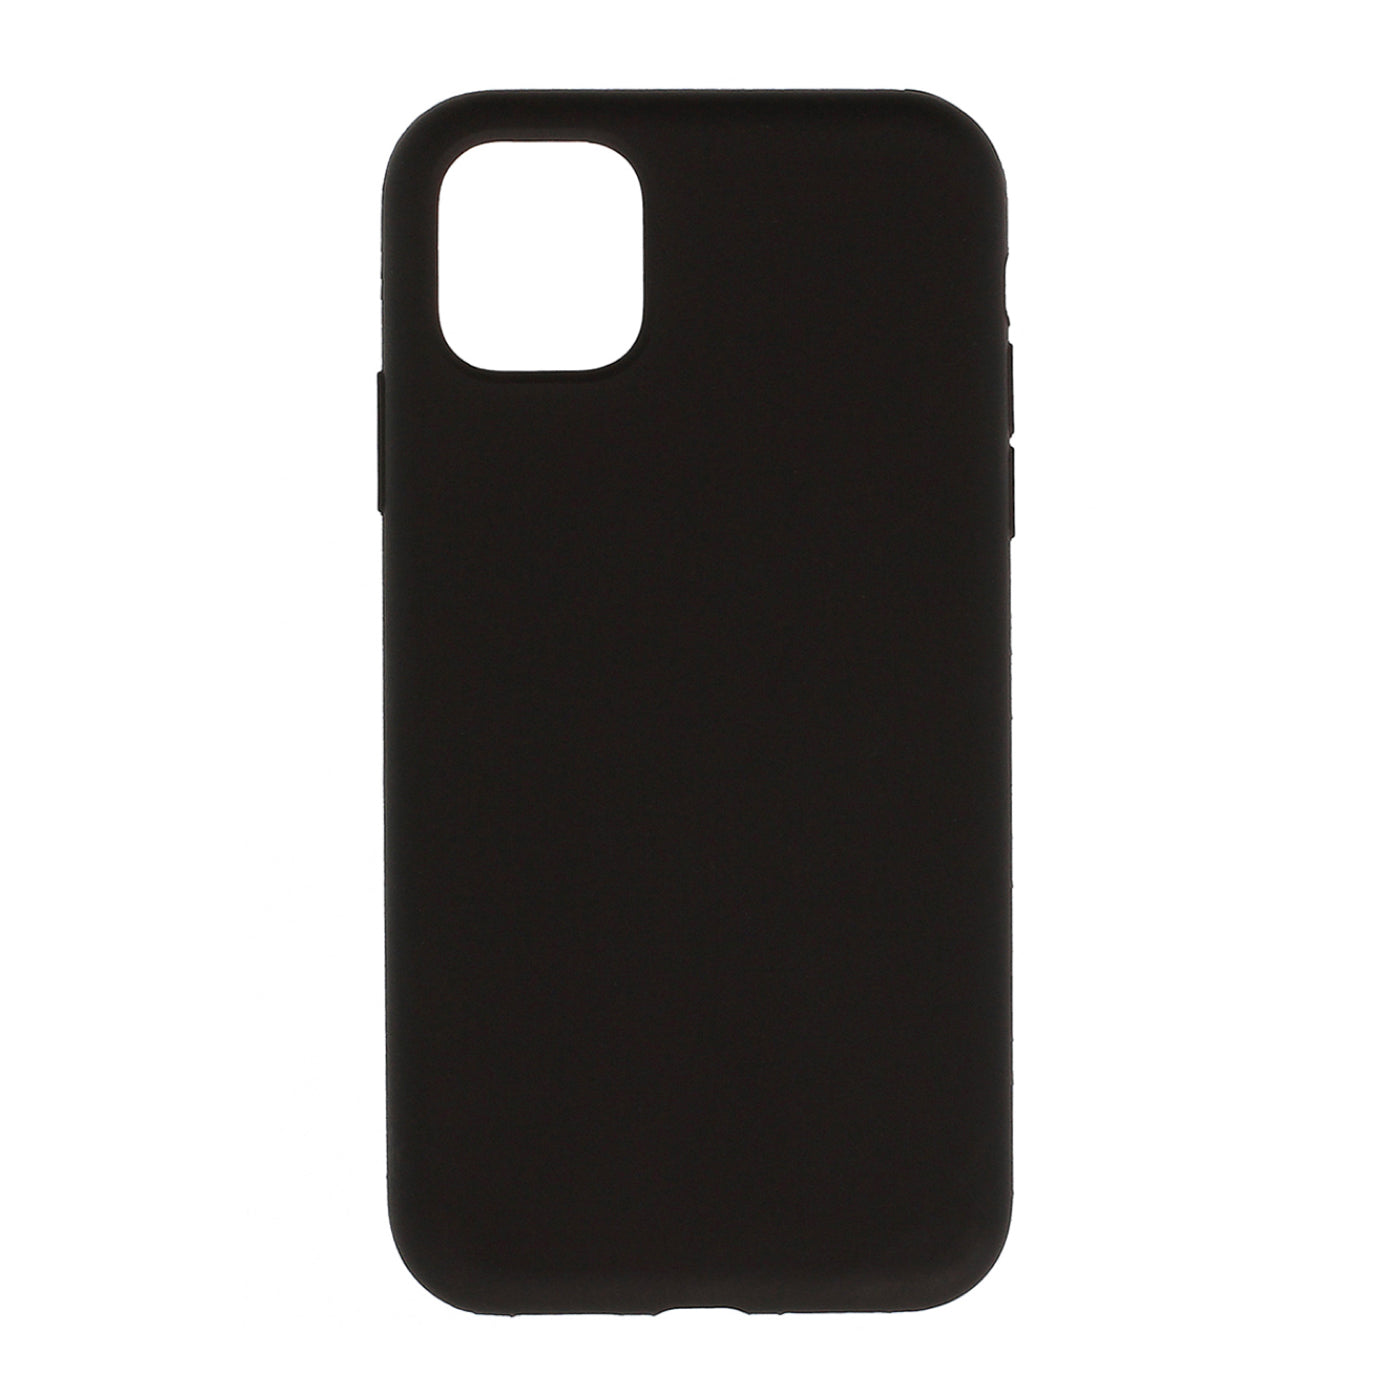 Liquid Phone Case - Black - Apple iPhone 11 Pro Max